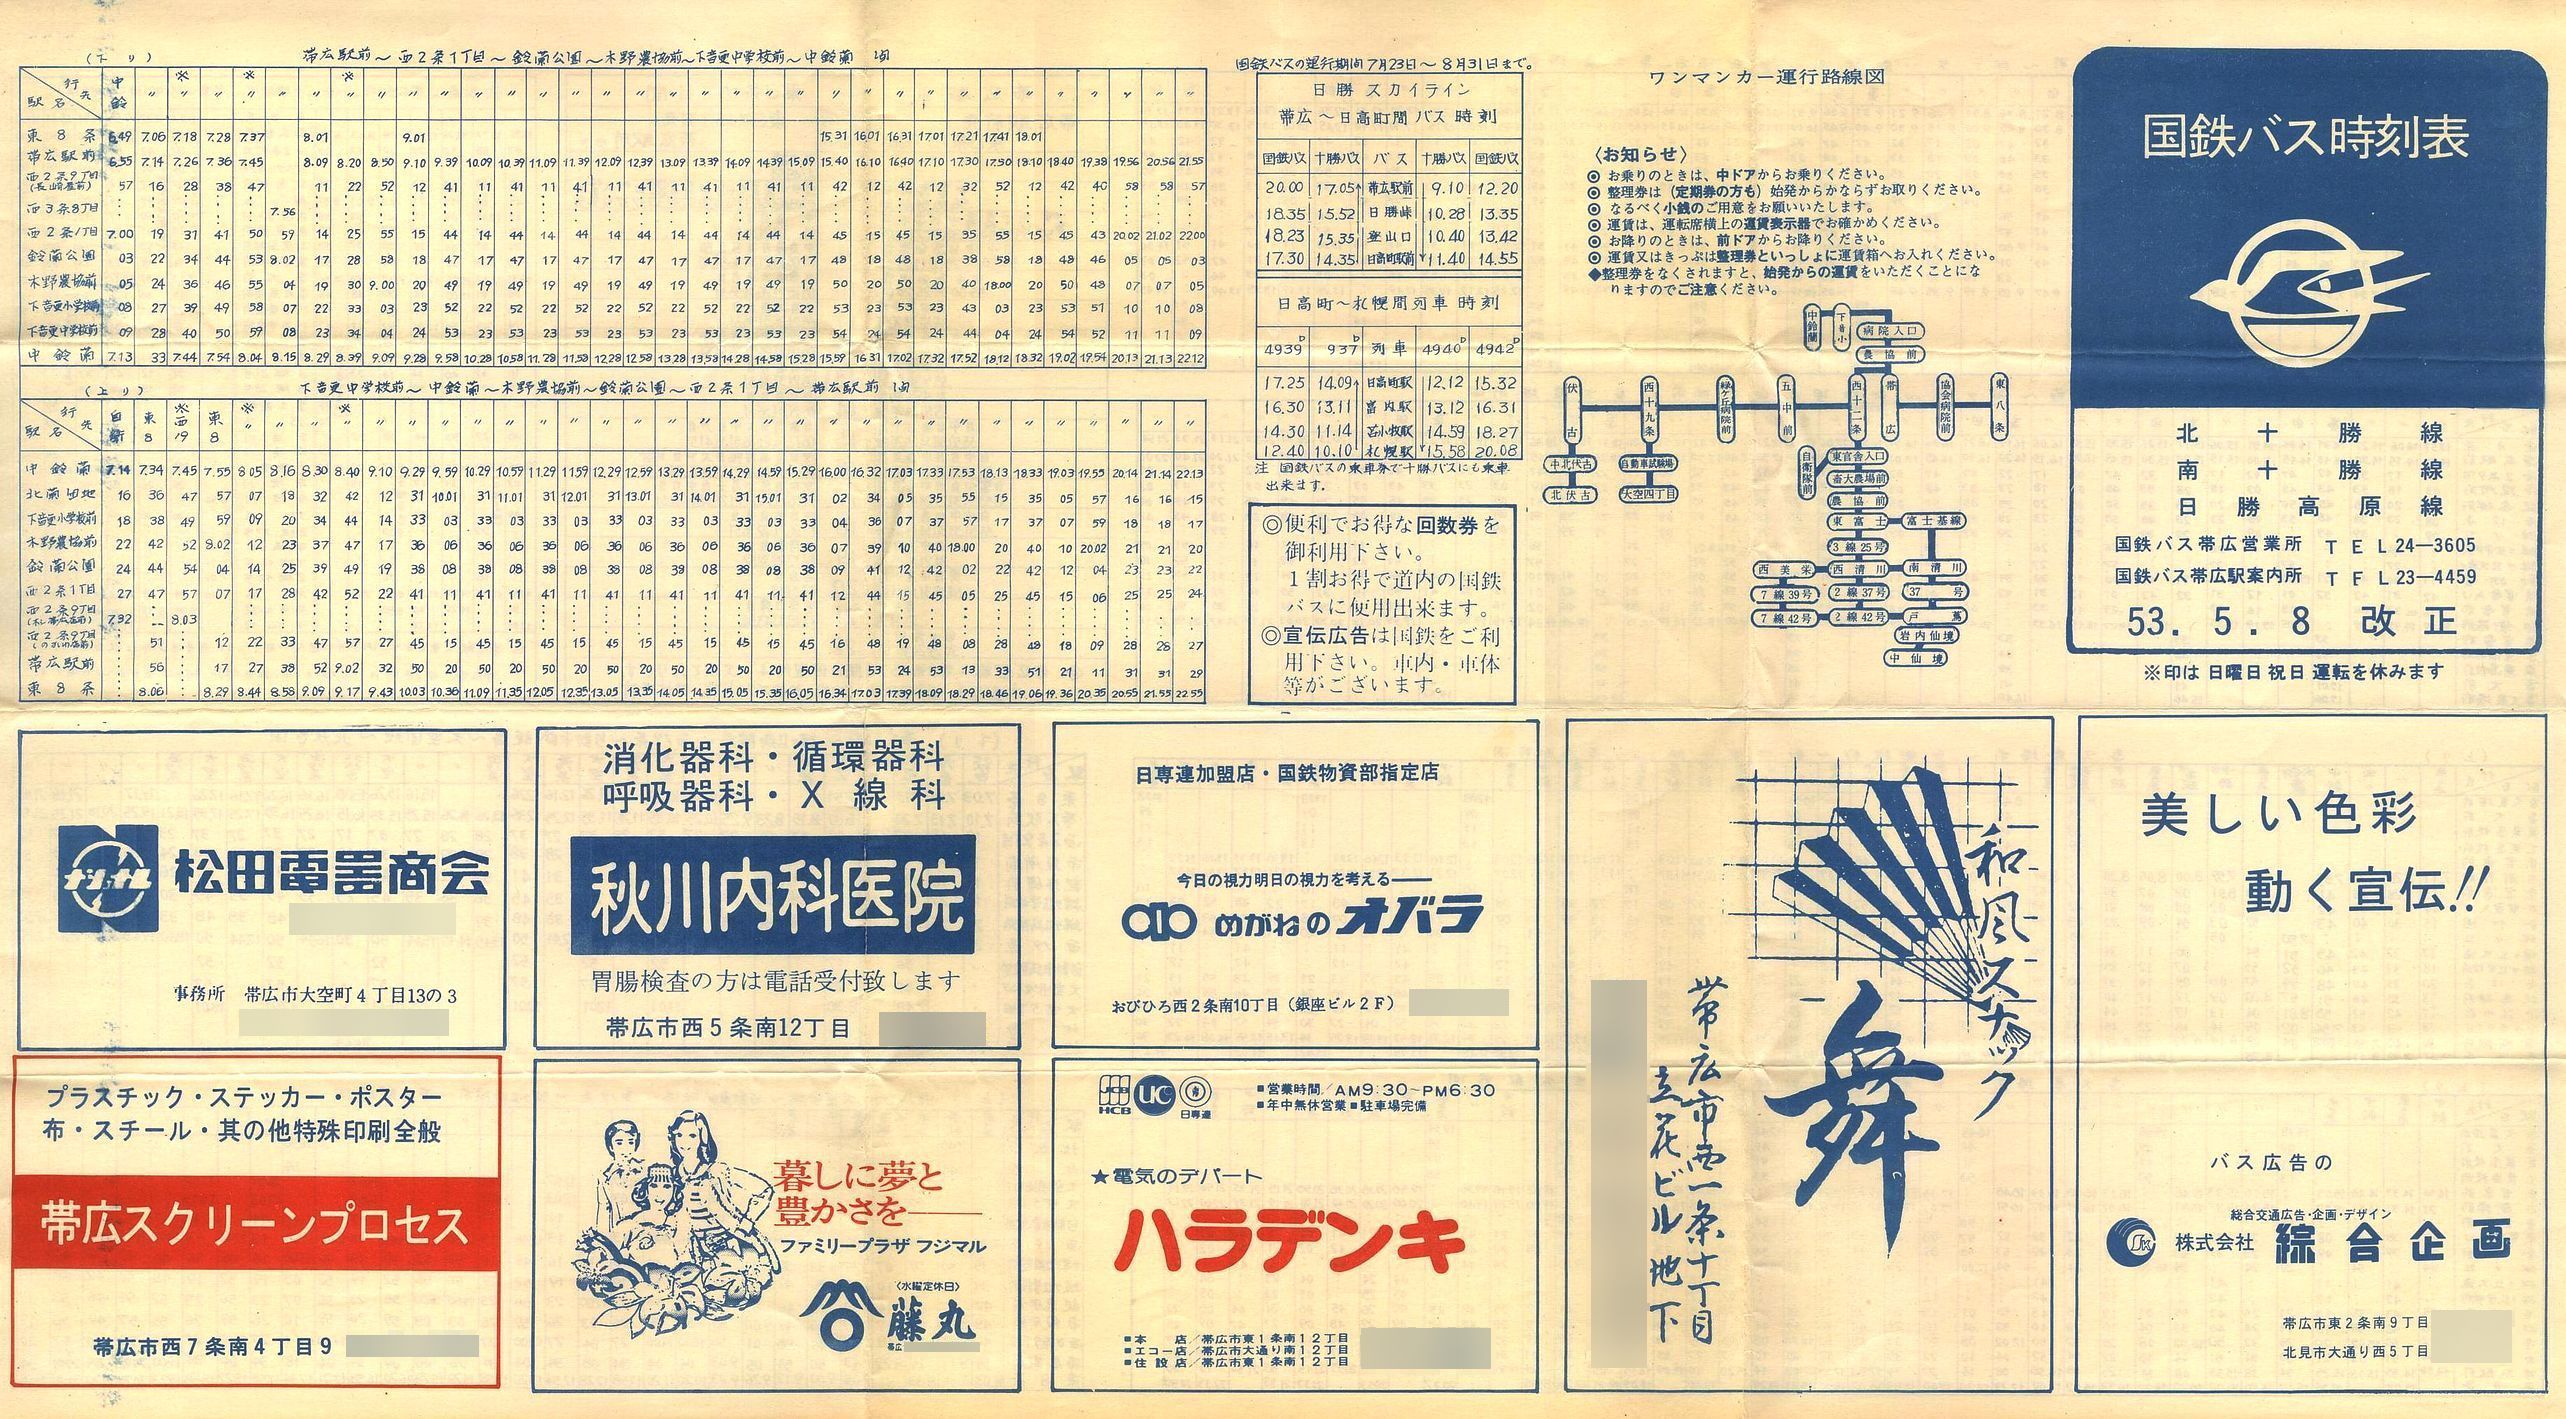 1978-05-08改正_国鉄バス_北十勝線・南十勝線・日勝高原線時刻表表面